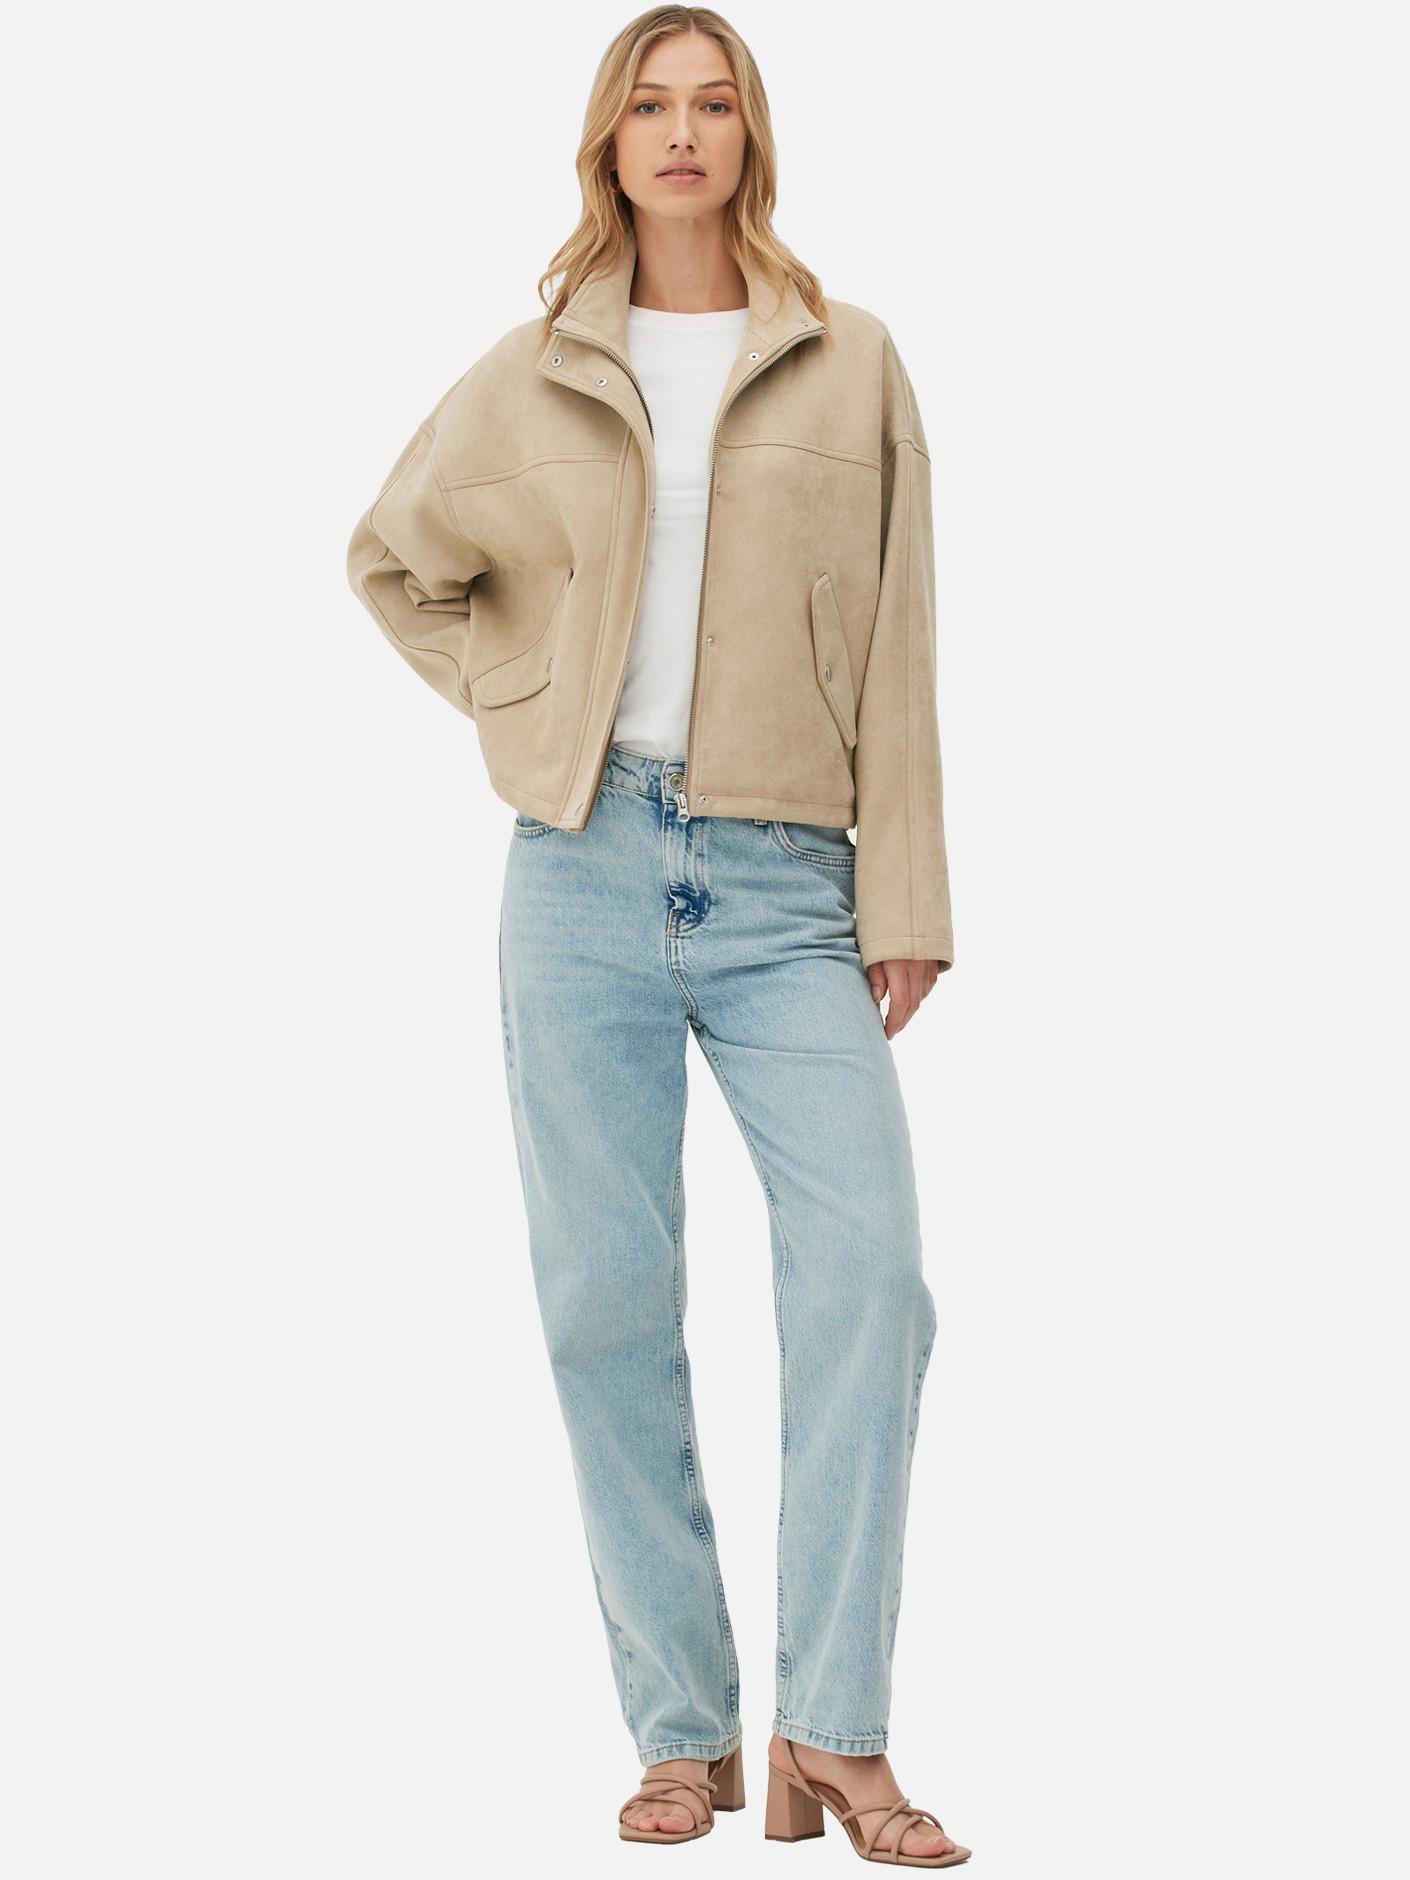 Model wears beige zip jacket, blue jeans and white tee